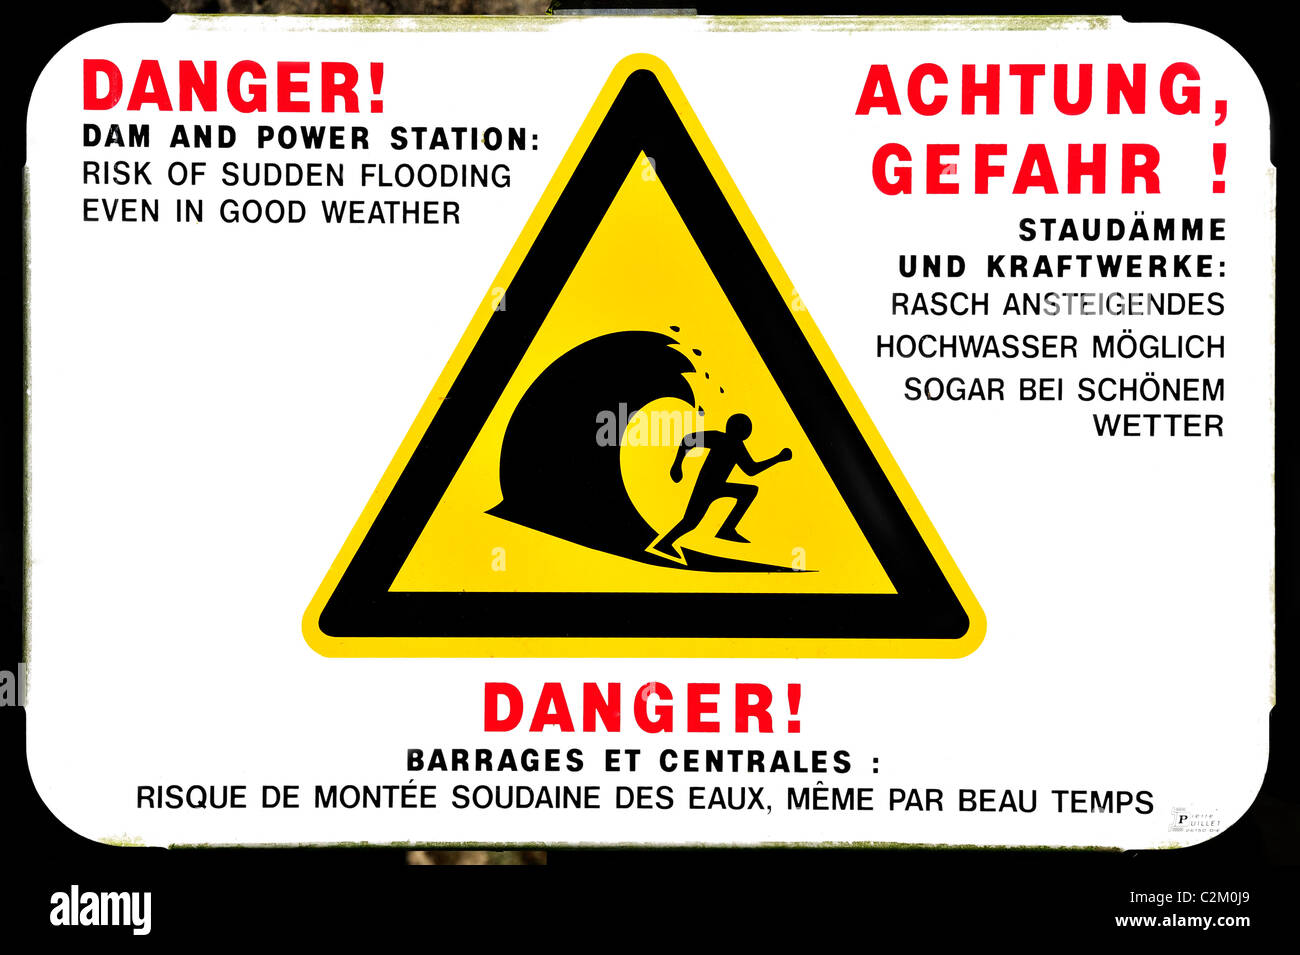 Panneau d'avertissement de brusques inondations de rivière par dam de power station, France Banque D'Images